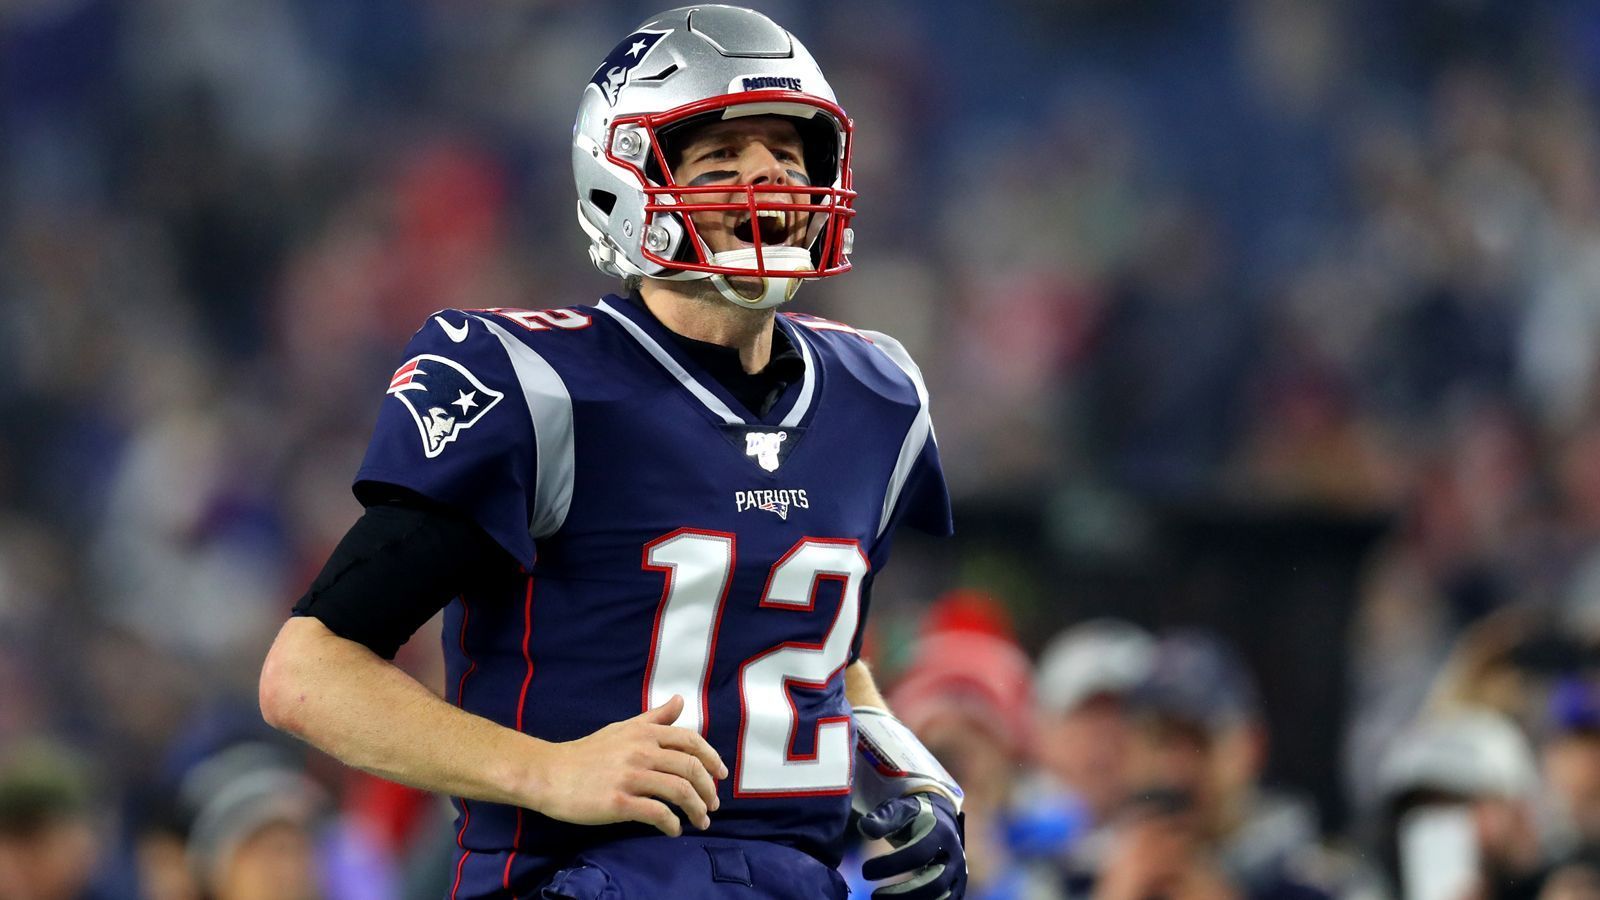 
                <strong>Platz 2: Tom Brady</strong><br>
                Team: New England PatriotsPosition: Quarterback
              